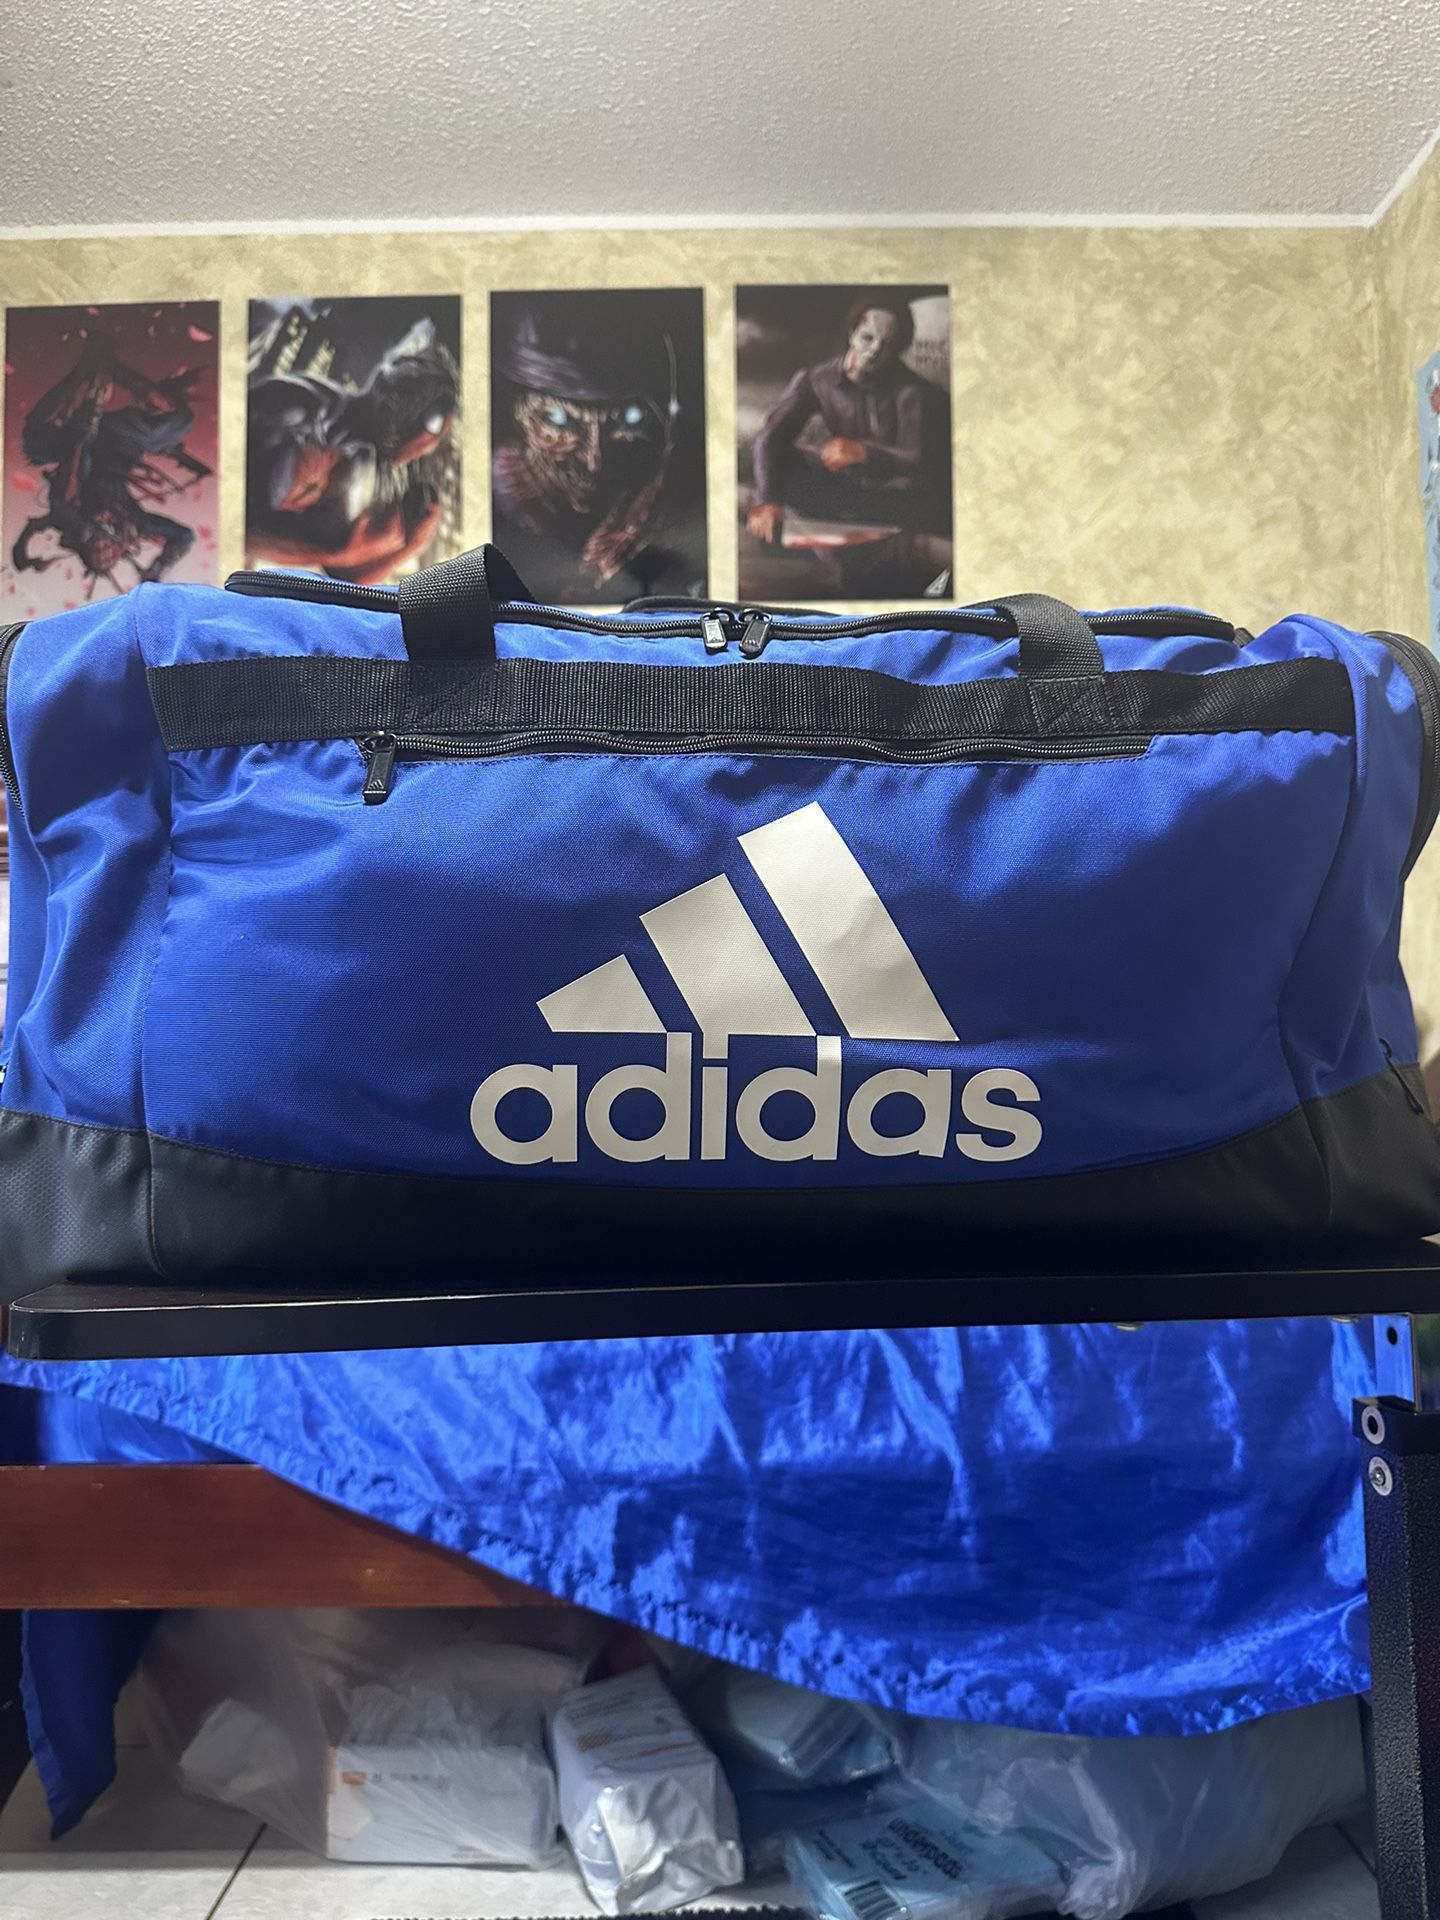 Adidas Large Duffle Bag